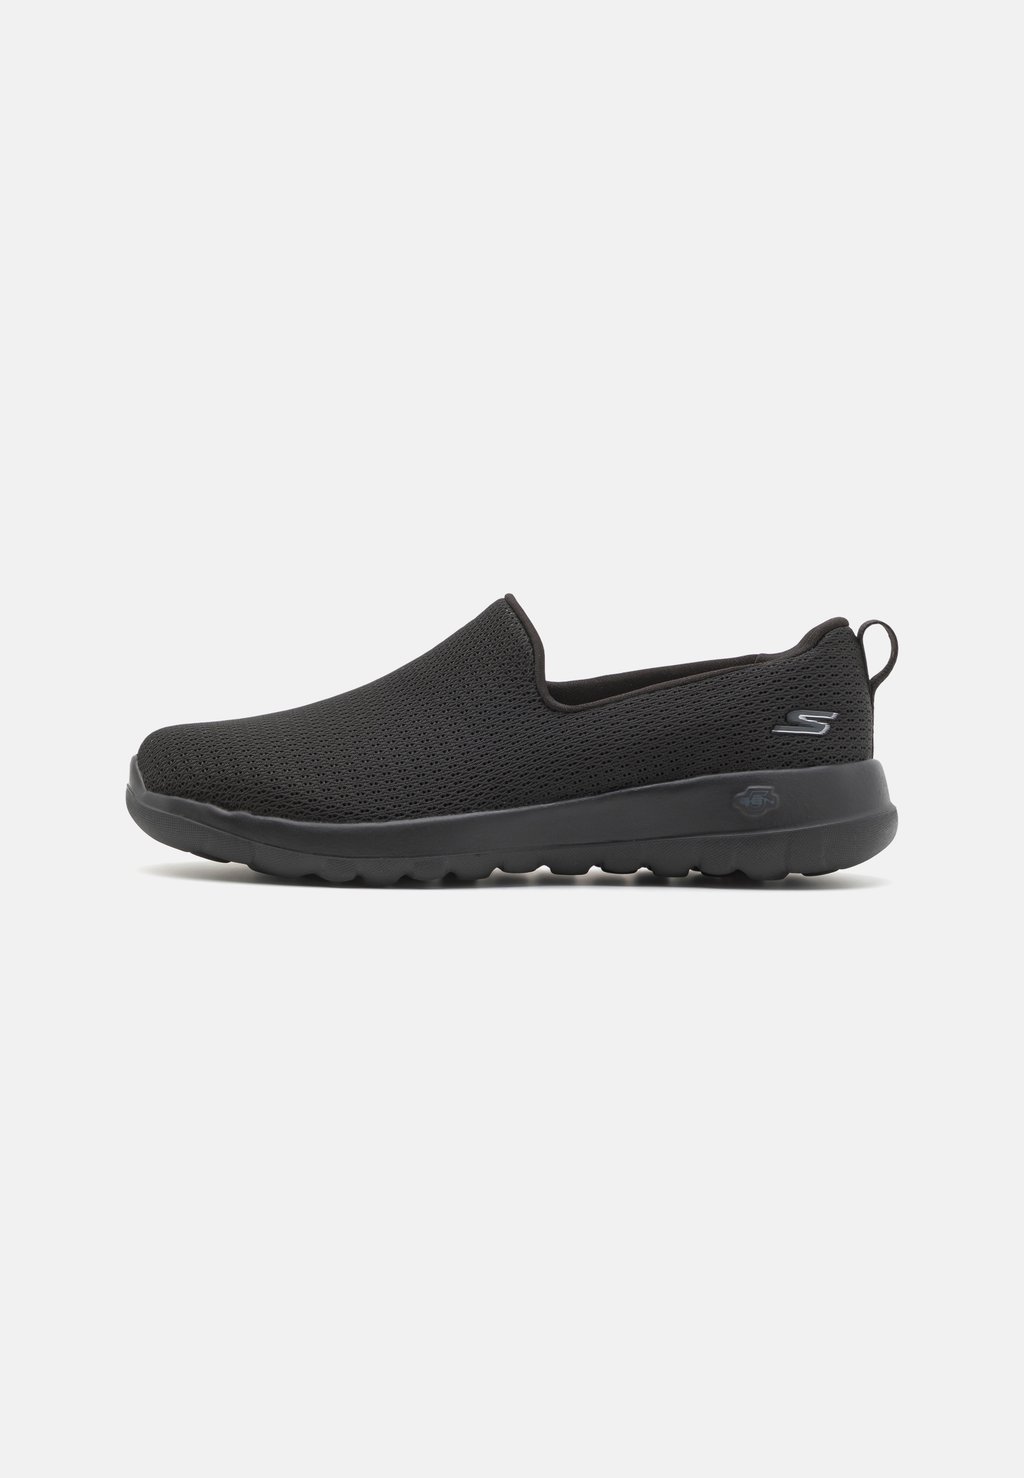 Обувь для ходьбы GO WALK SLIP ON Skechers Performance, цвет black обувь для ходьбы go walk slip in skechers performance цвет black